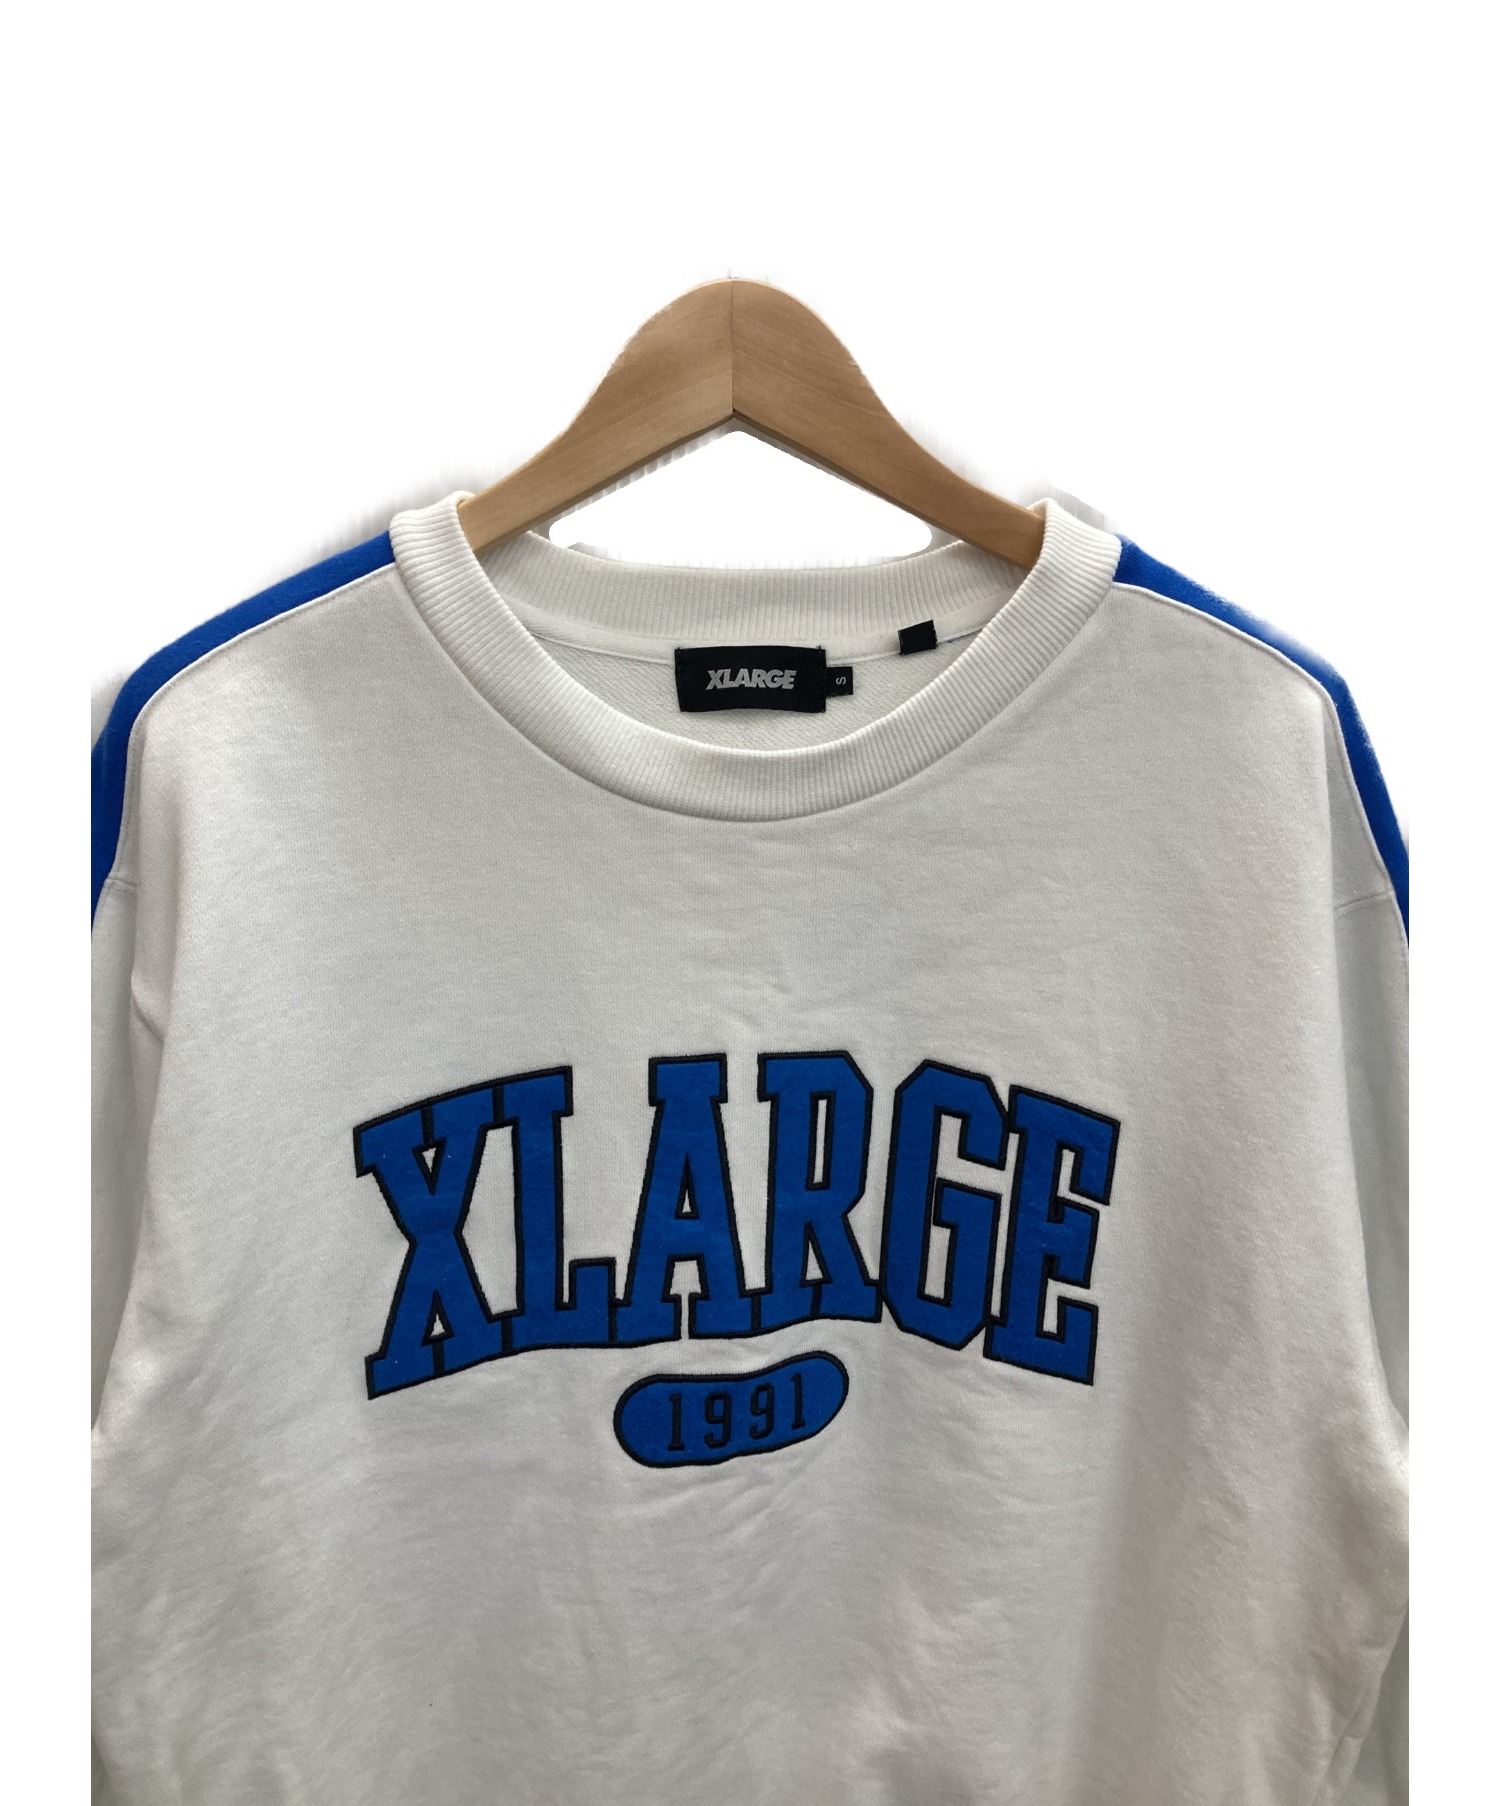 X-LARGE (エクストララージ) スウェット ホワイト×ブルー サイズ:S 春秋物